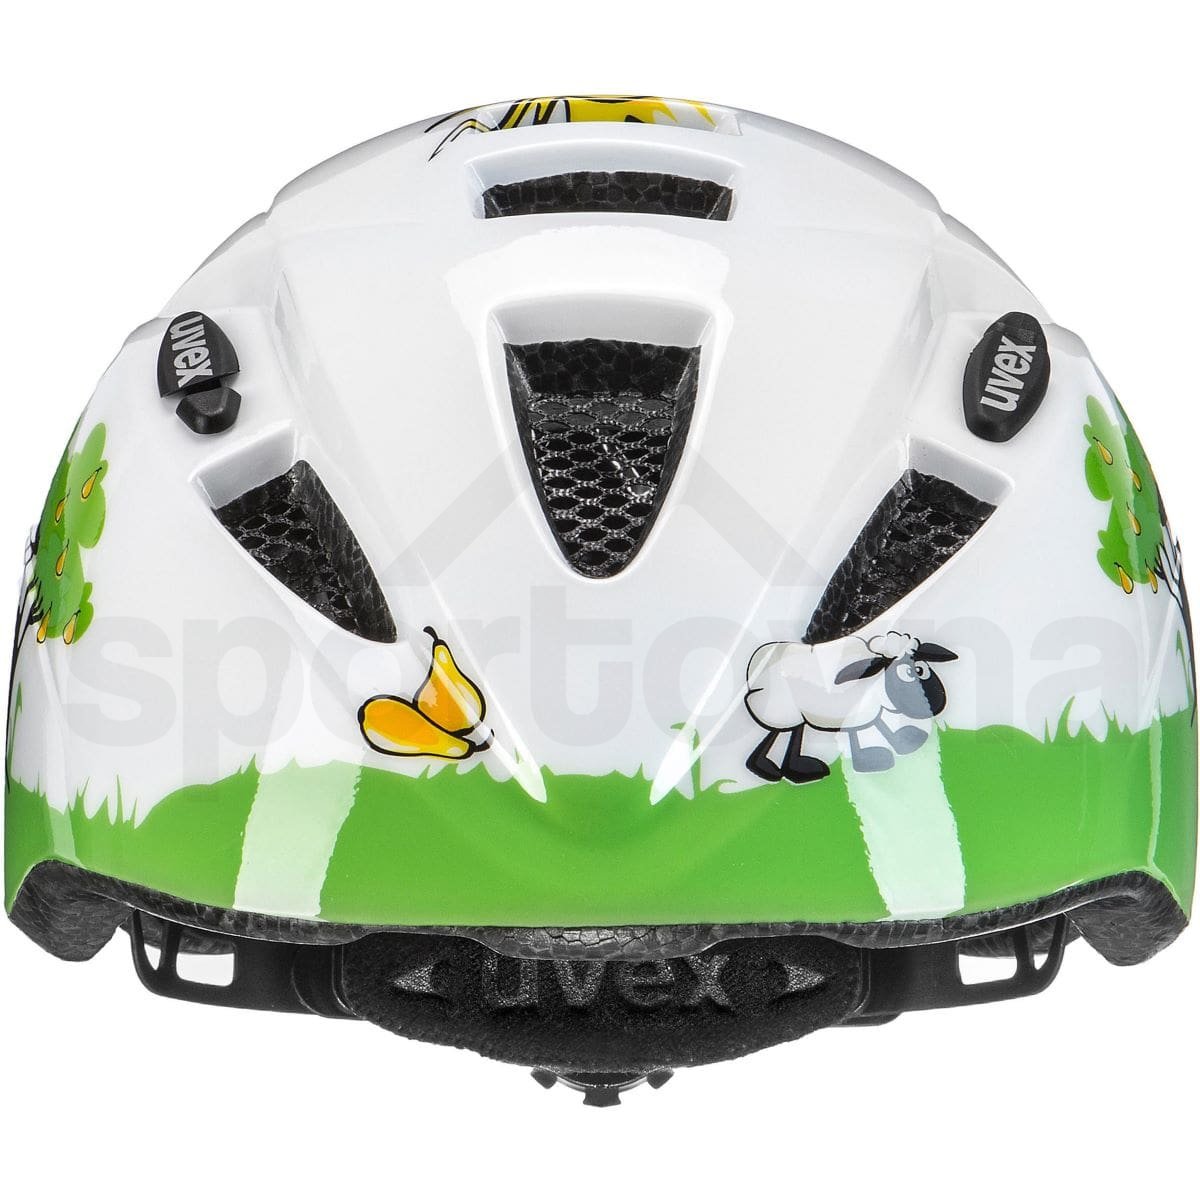 Cyklistická helma Uvex Kid 2 K - bílá/zelená